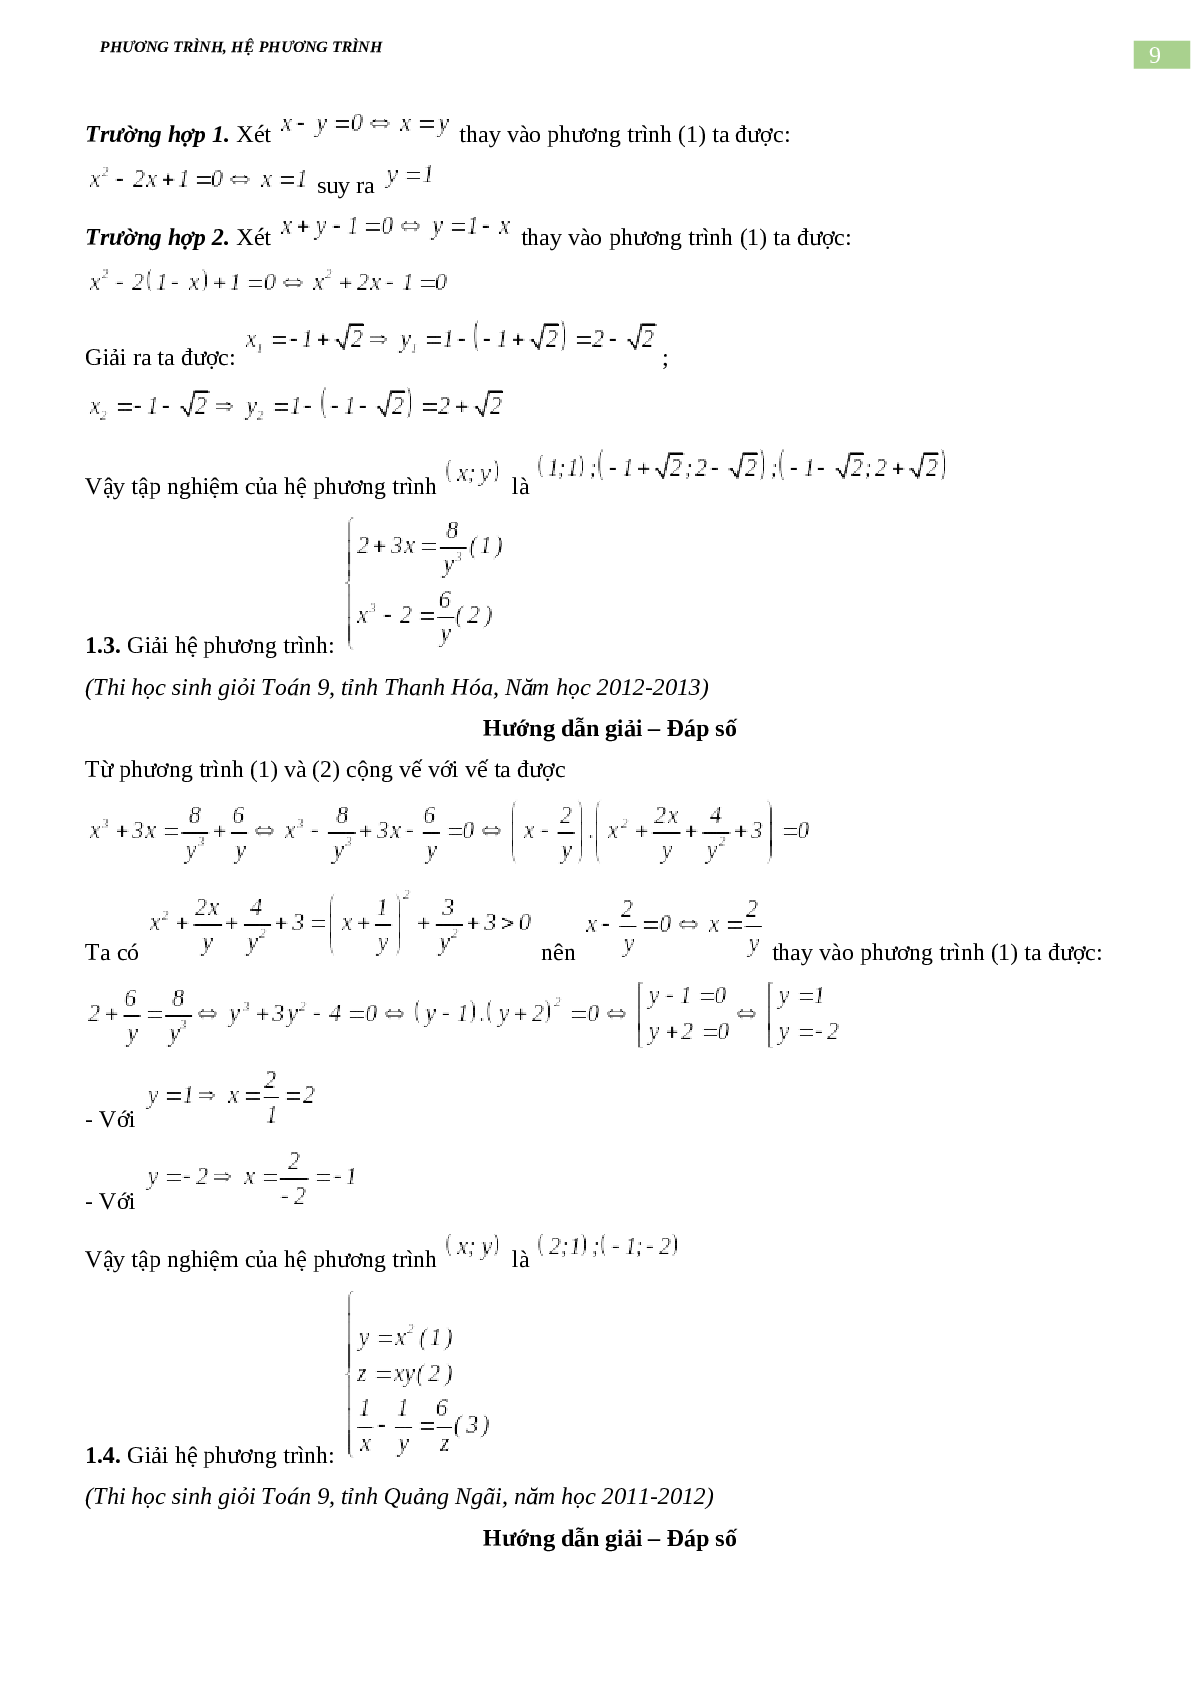 Bài tập về phương trình, hệ phương trình, bất phương trình không mẫu mực có đáp án, chọn lọc (trang 9)